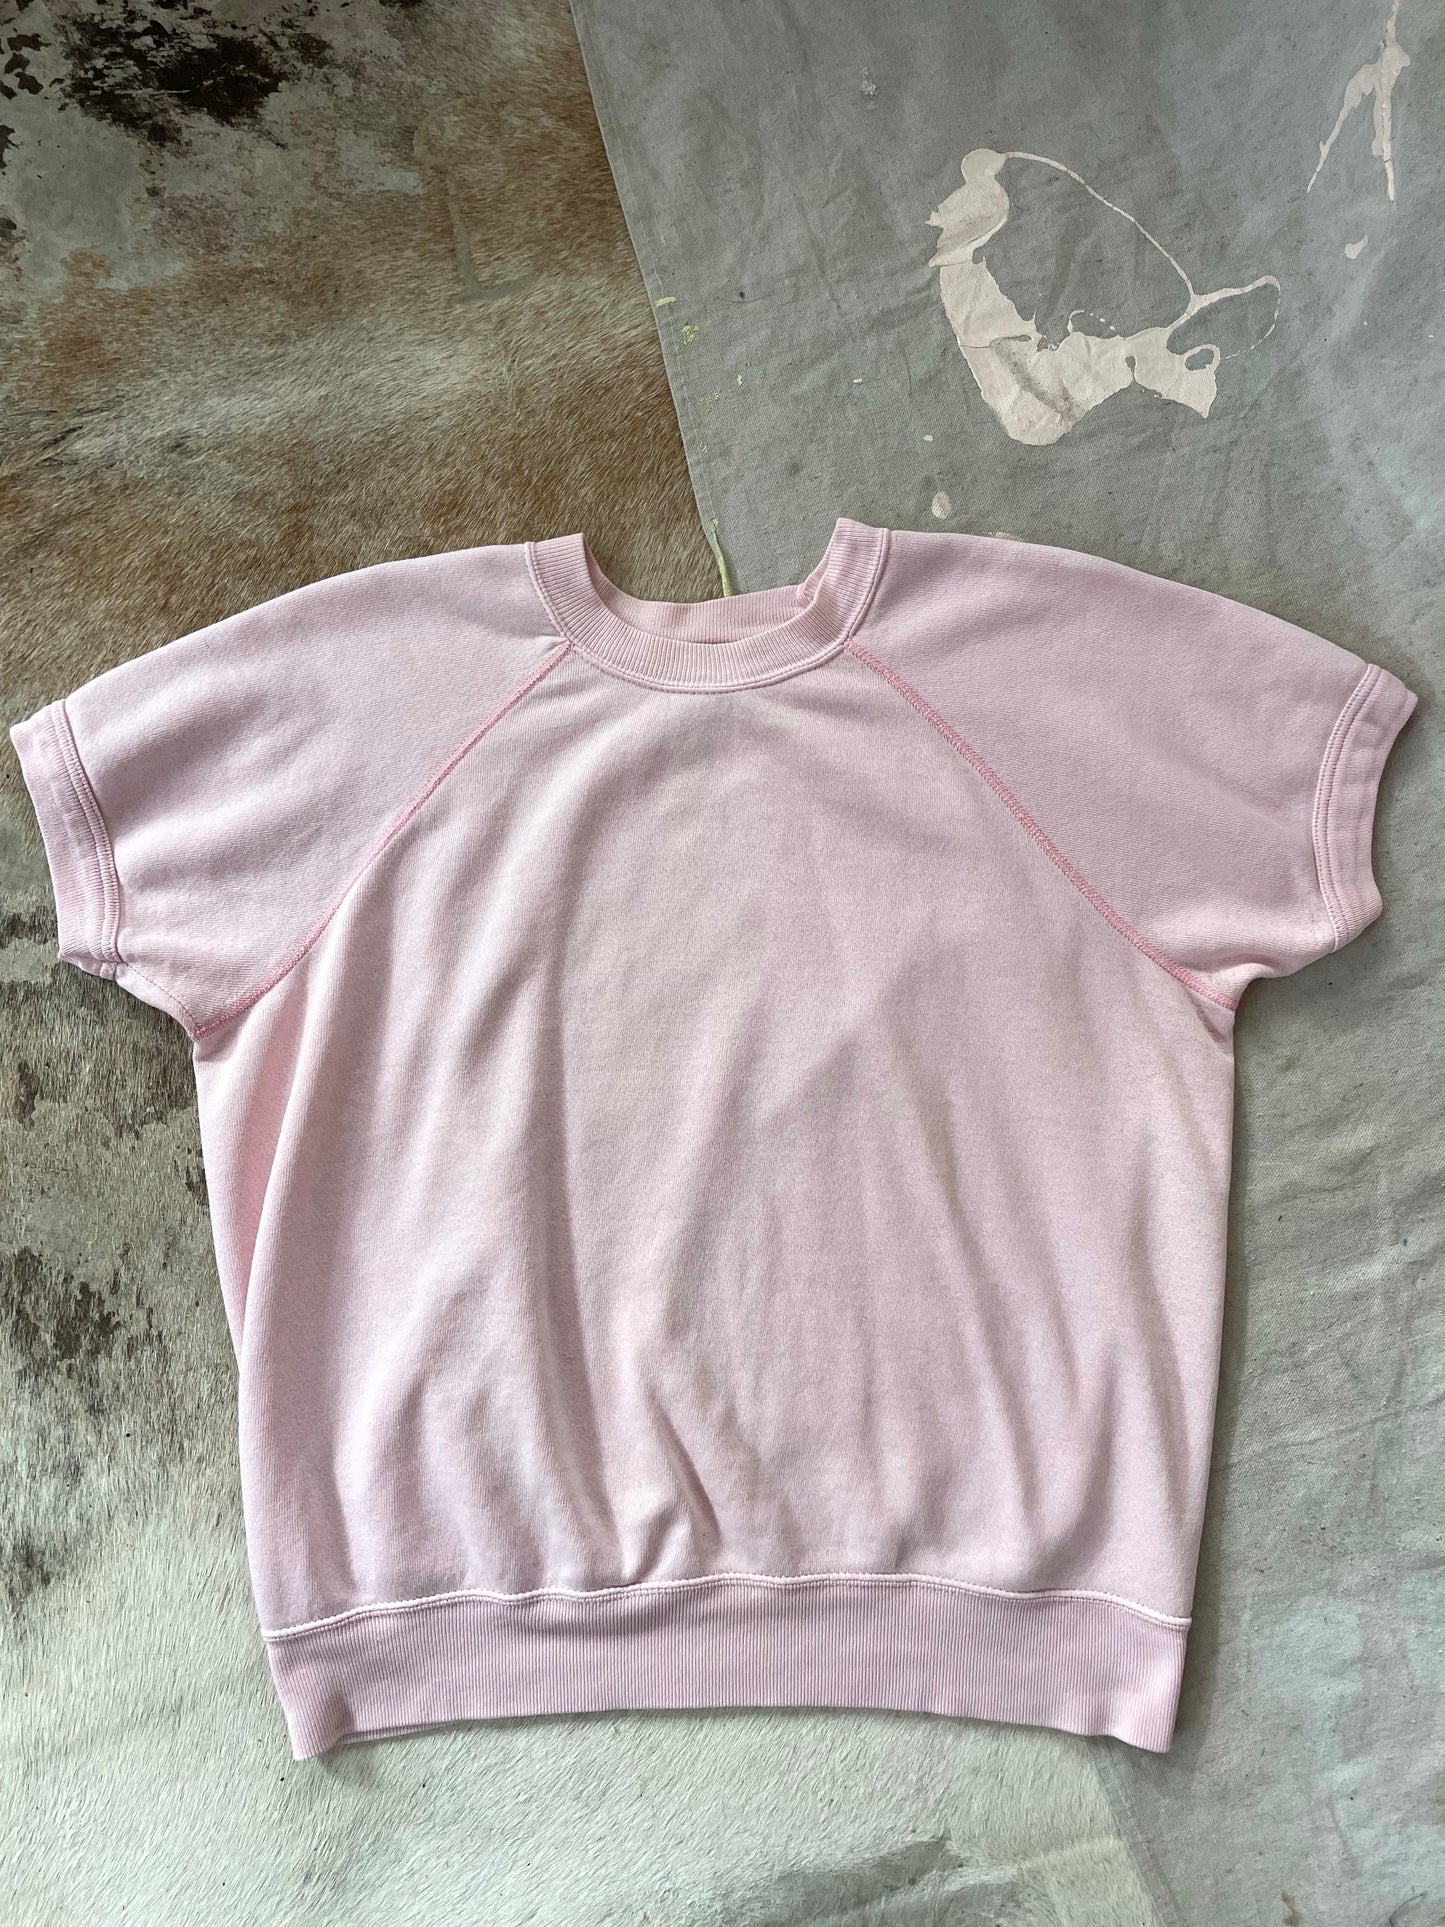 90s Blank Pale Pink Short Sleeve Sweatshirt